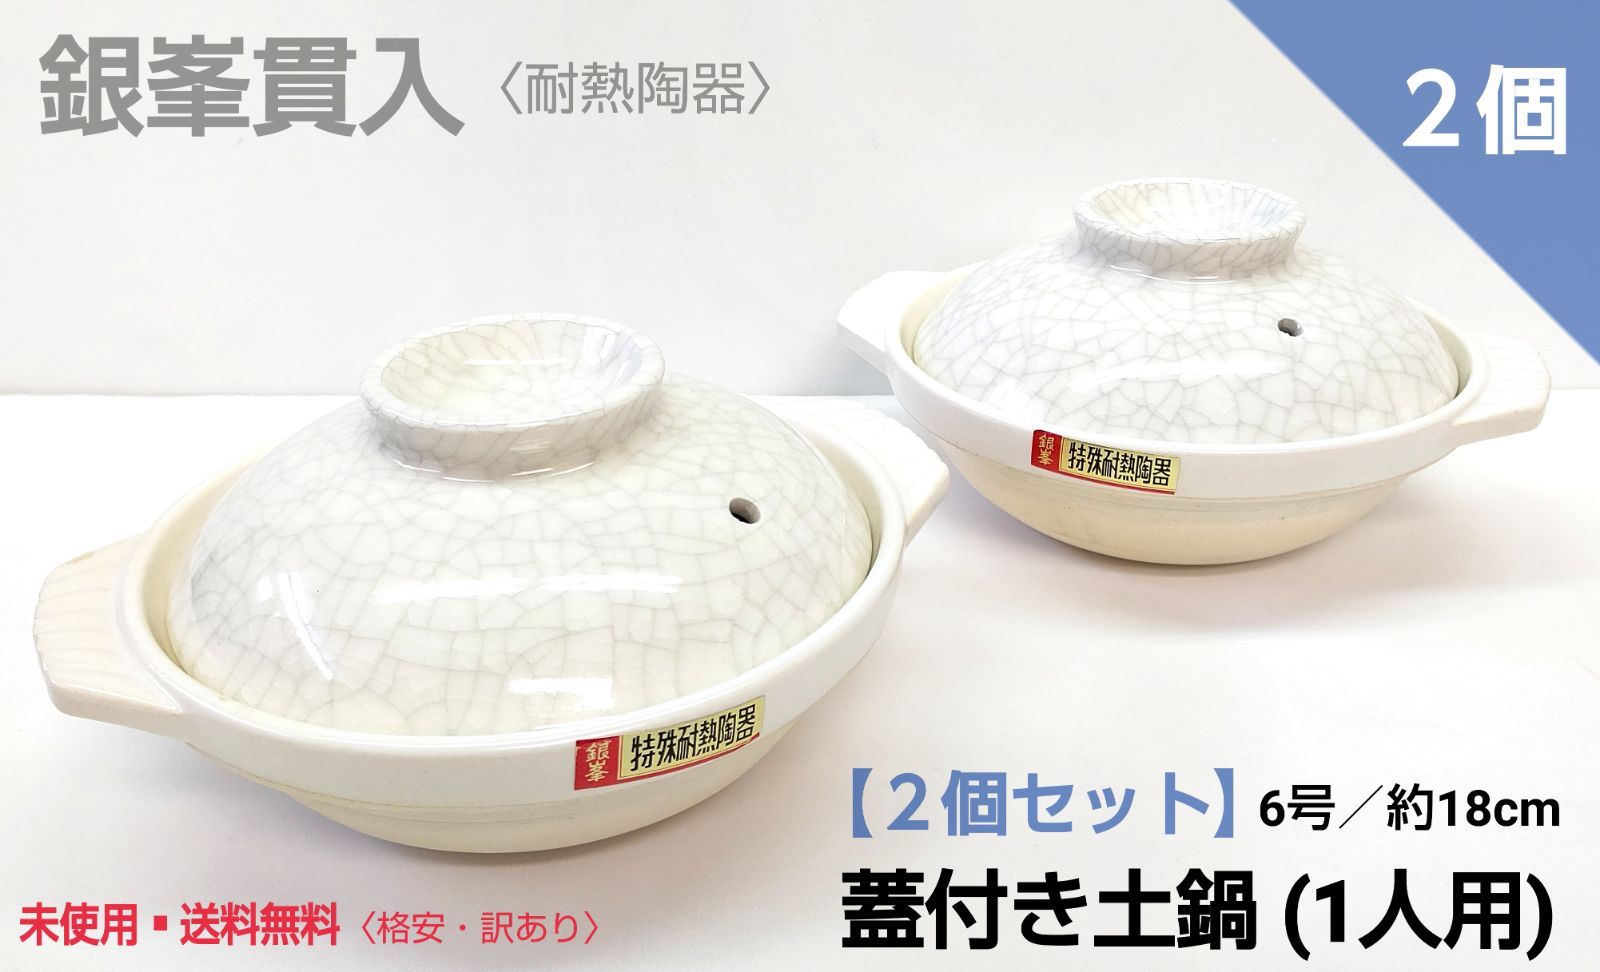 永遠の定番モデル 土鍋 セット TAMAGAWA TOKI 特殊耐熱陶器 銀峰 